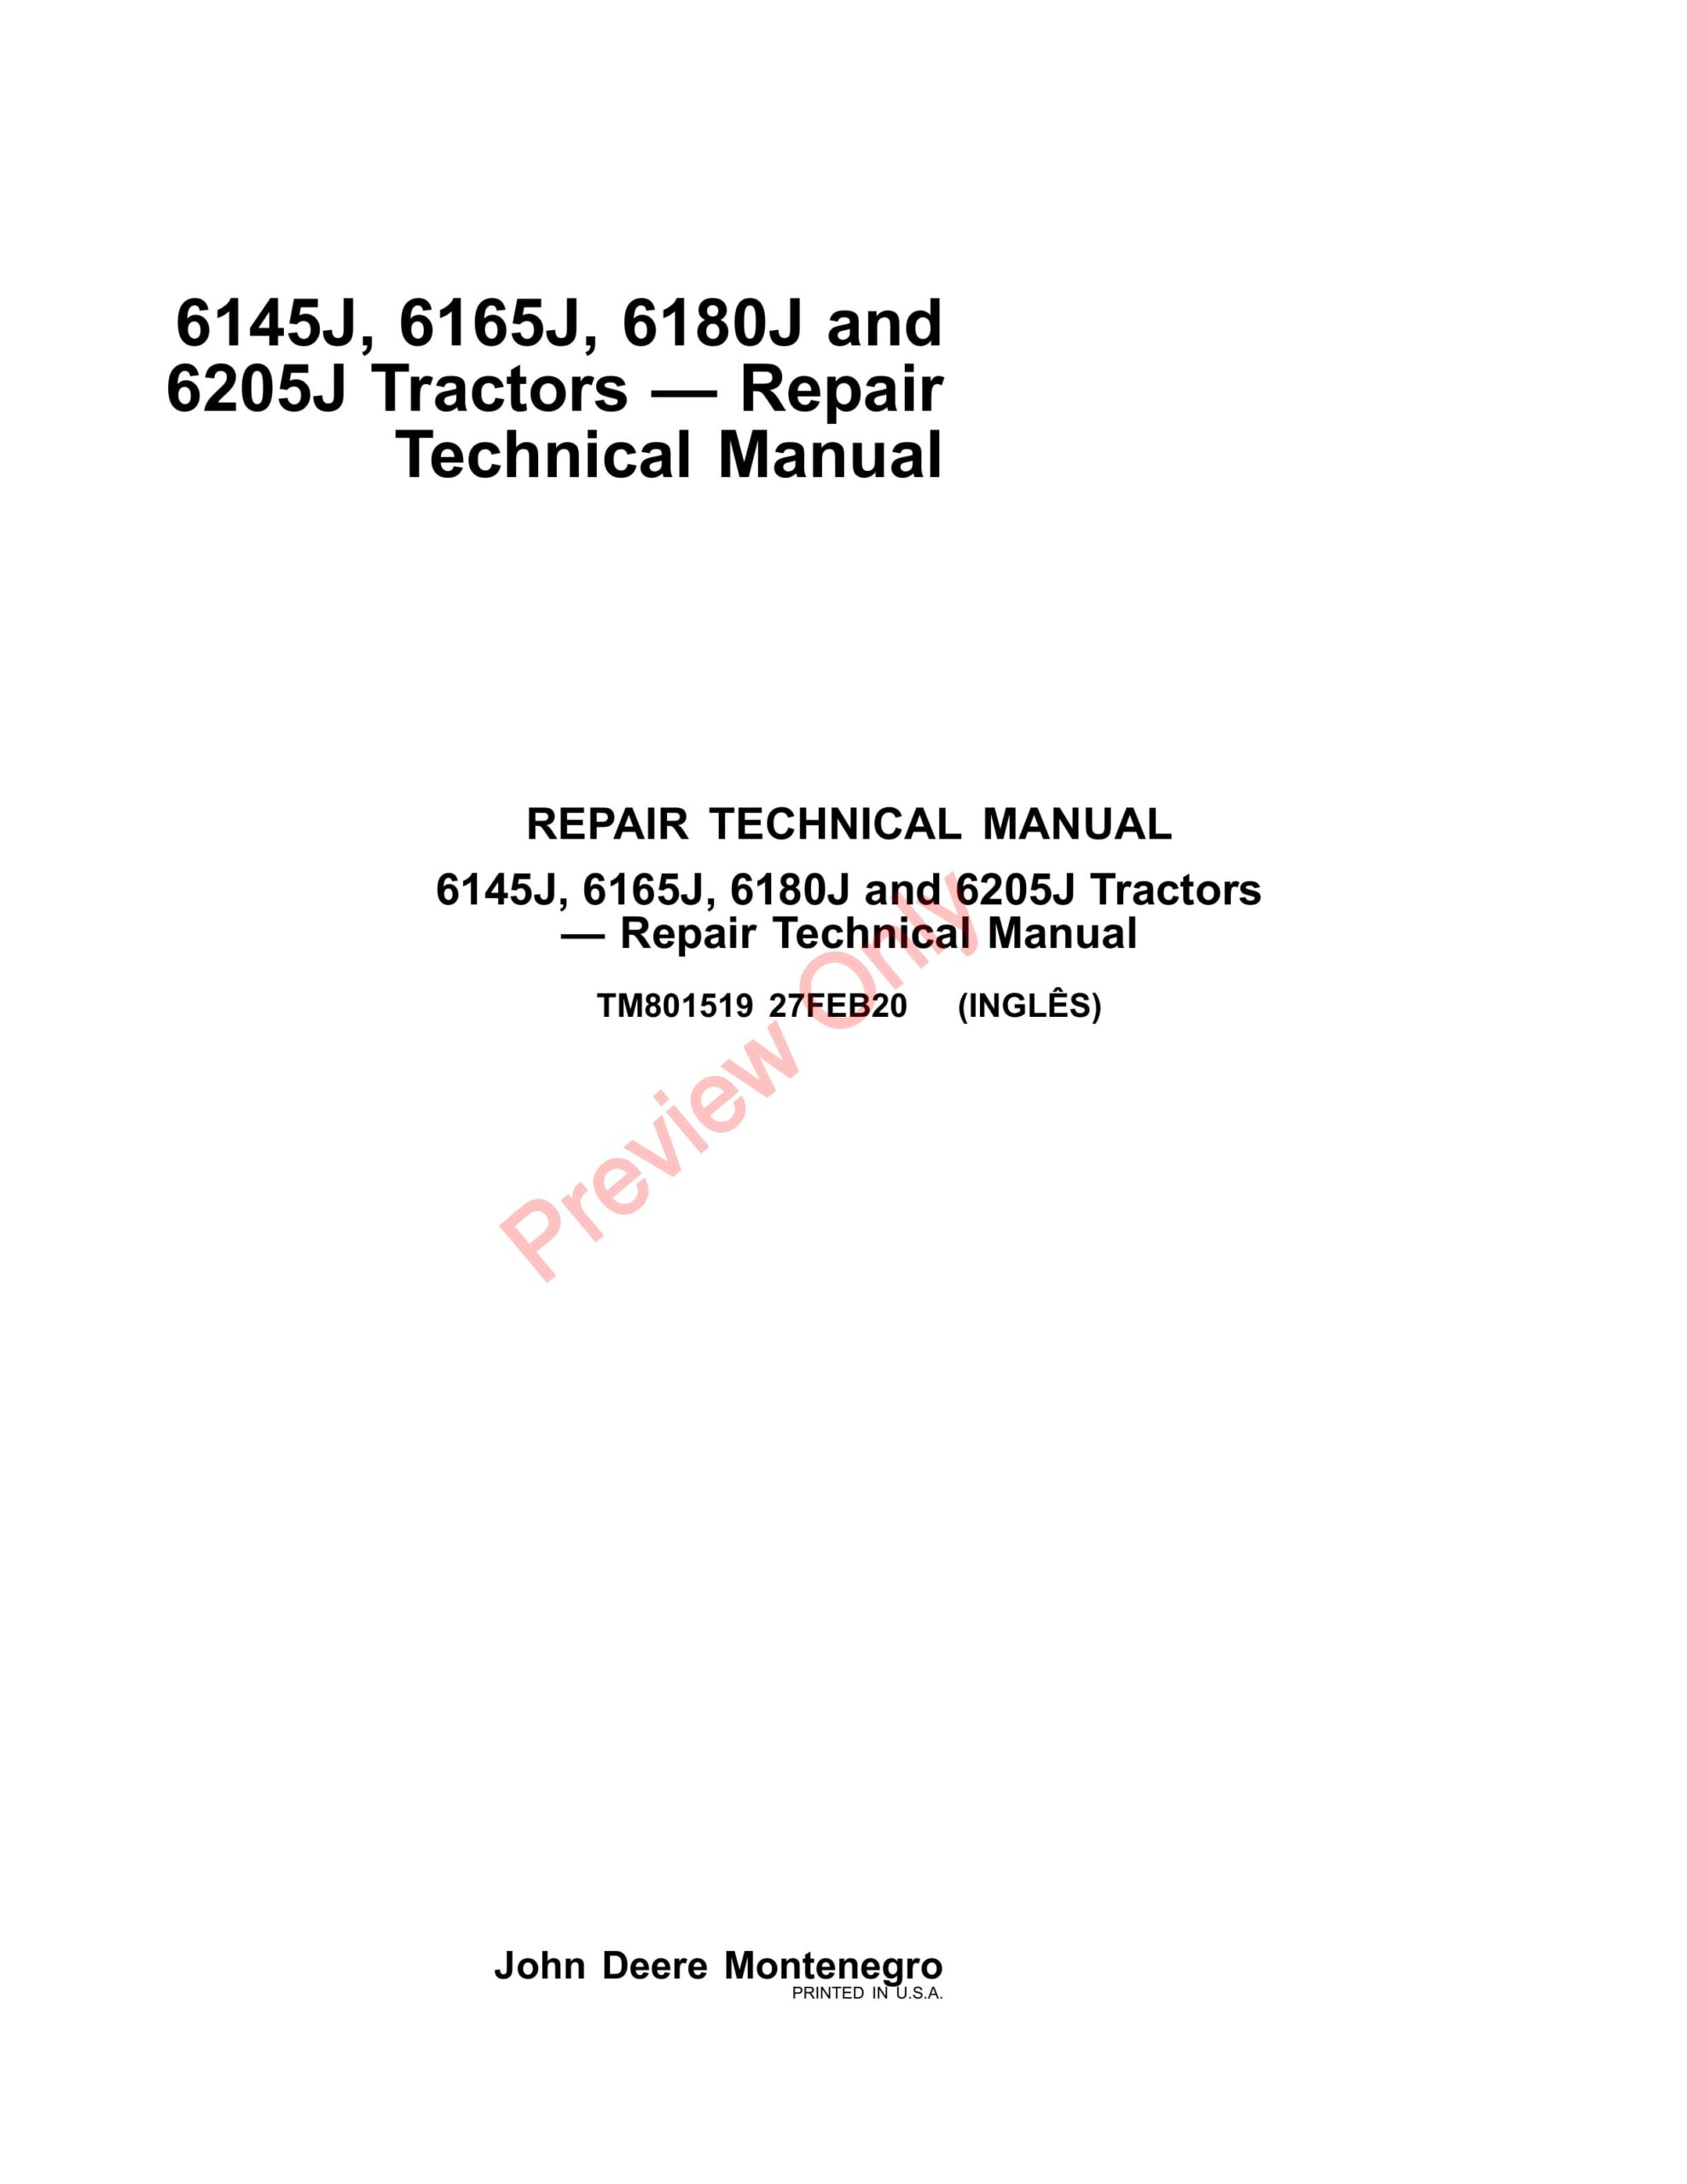 John Deere 6145J, 6165J, 6180J and 6205J Tractors Repair Technical Manual TM801519 27FEB20-1